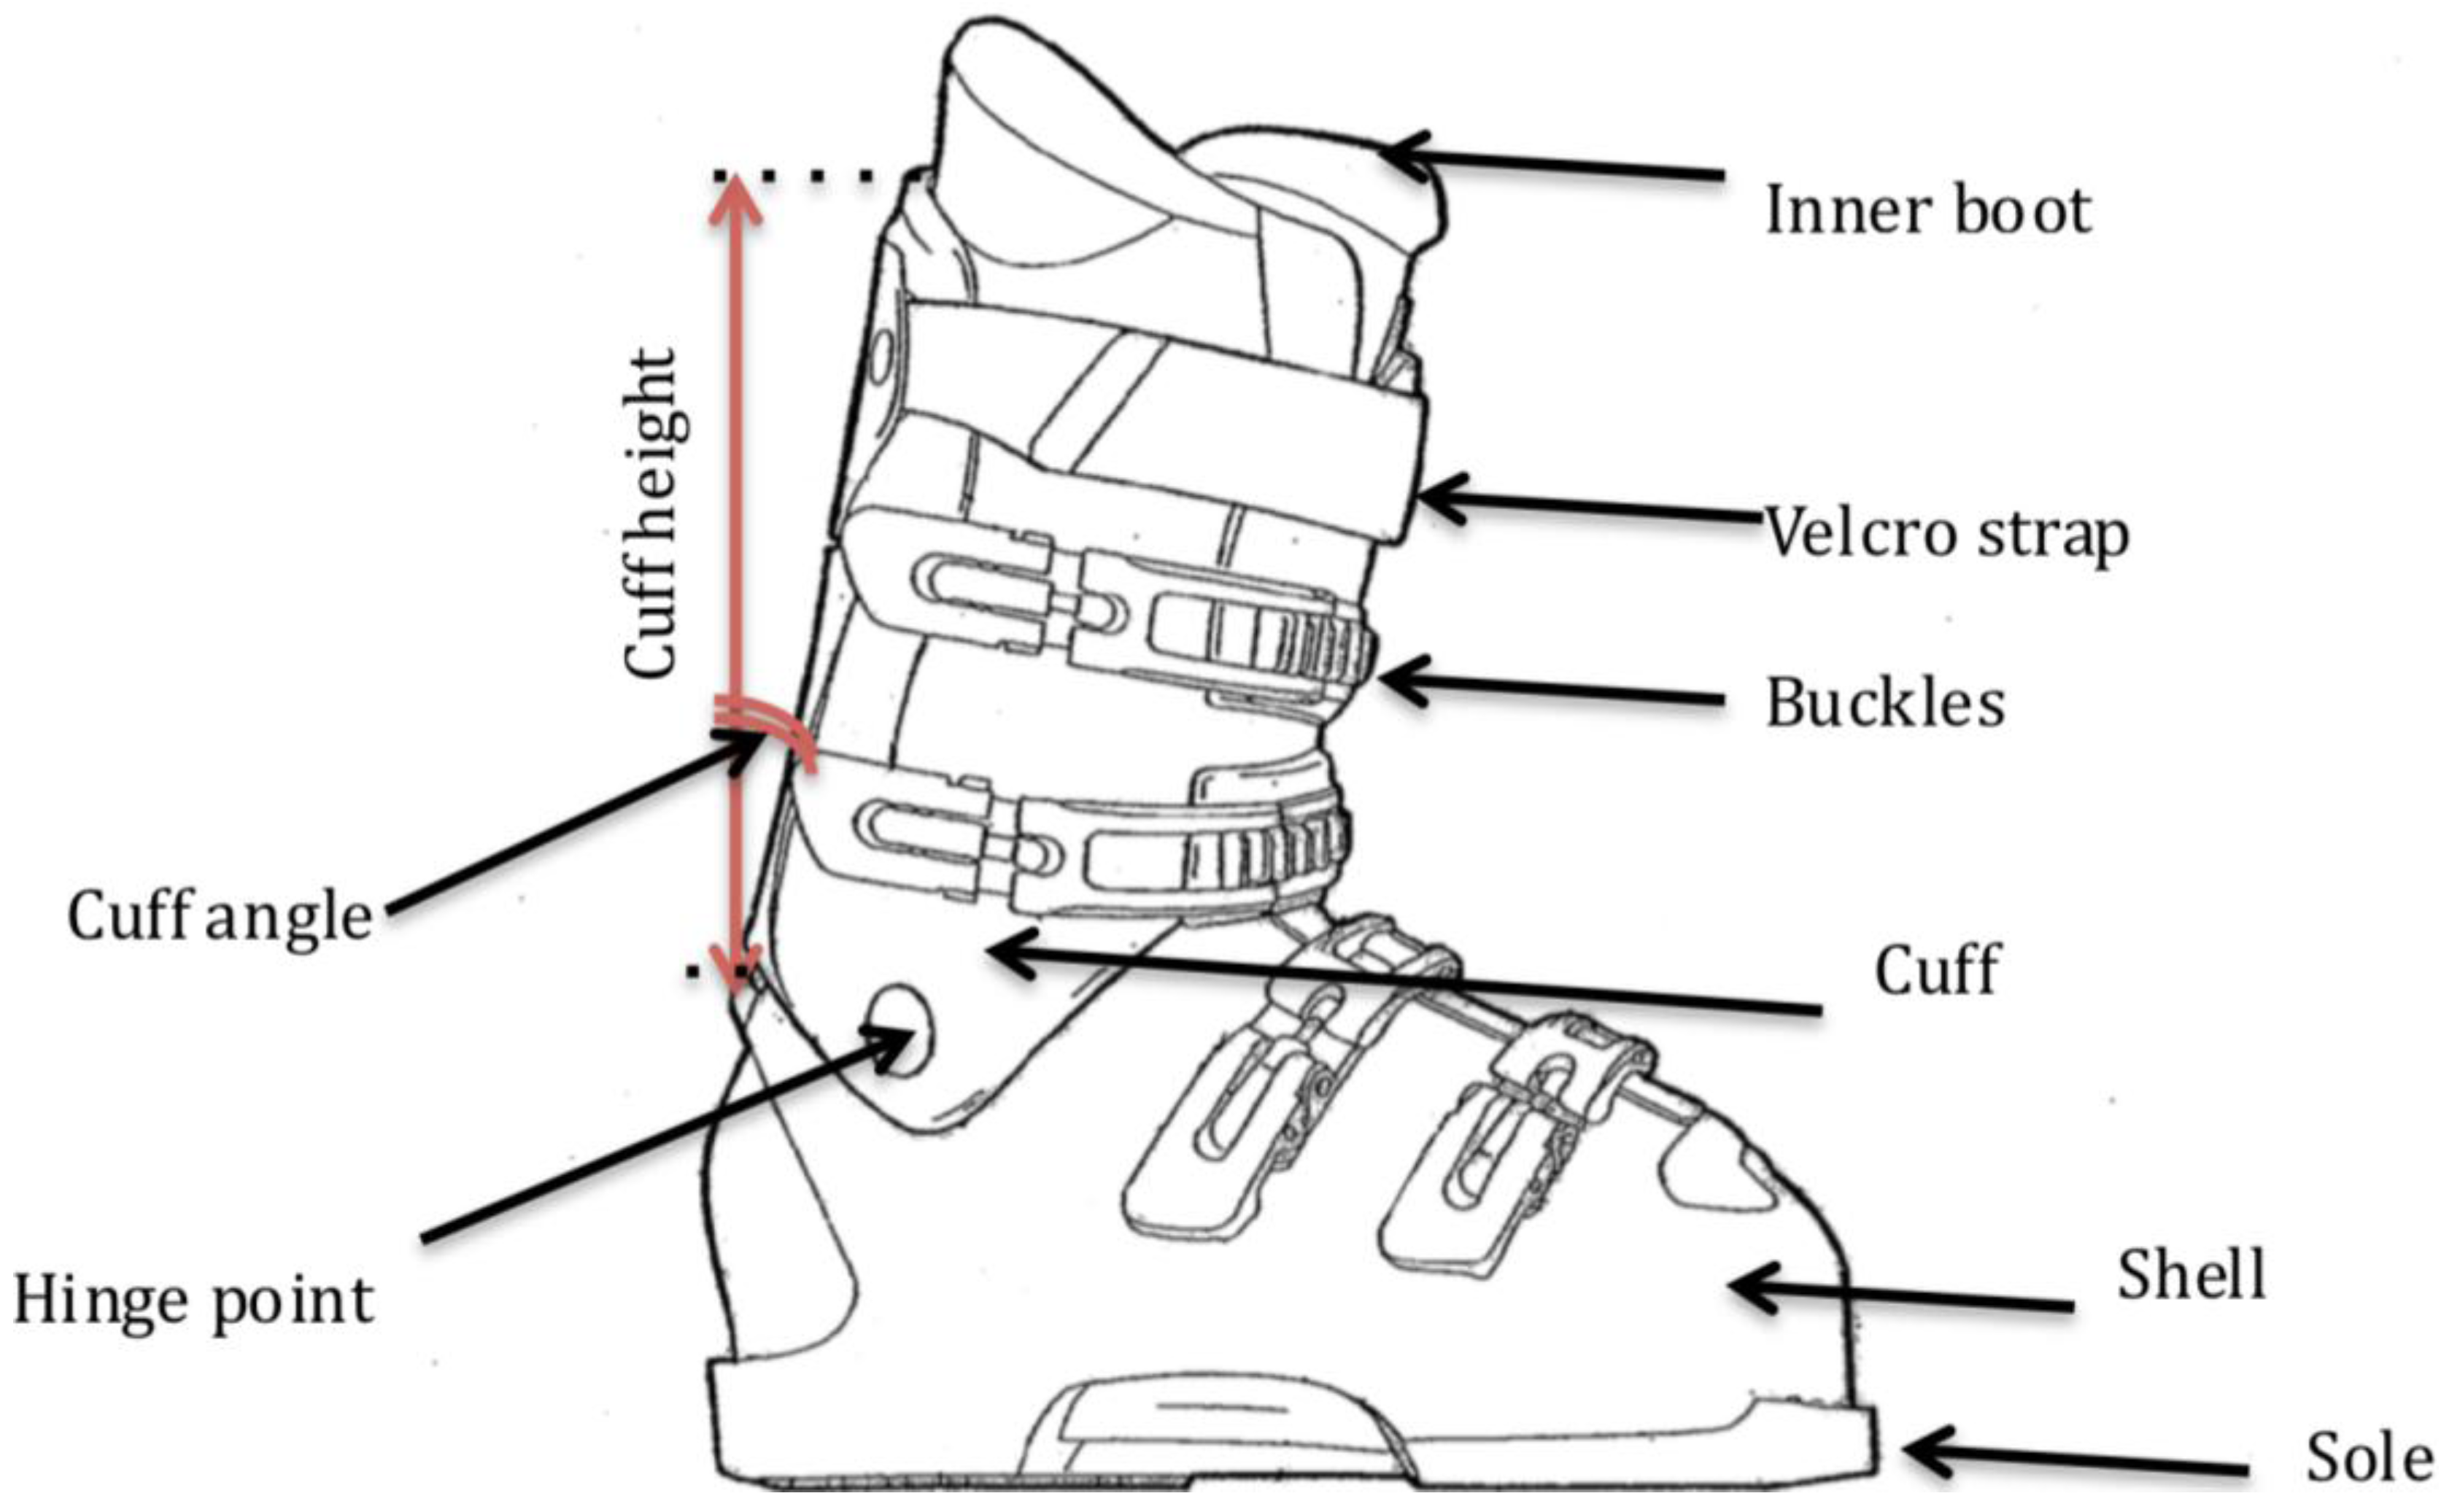 ski boot measurements